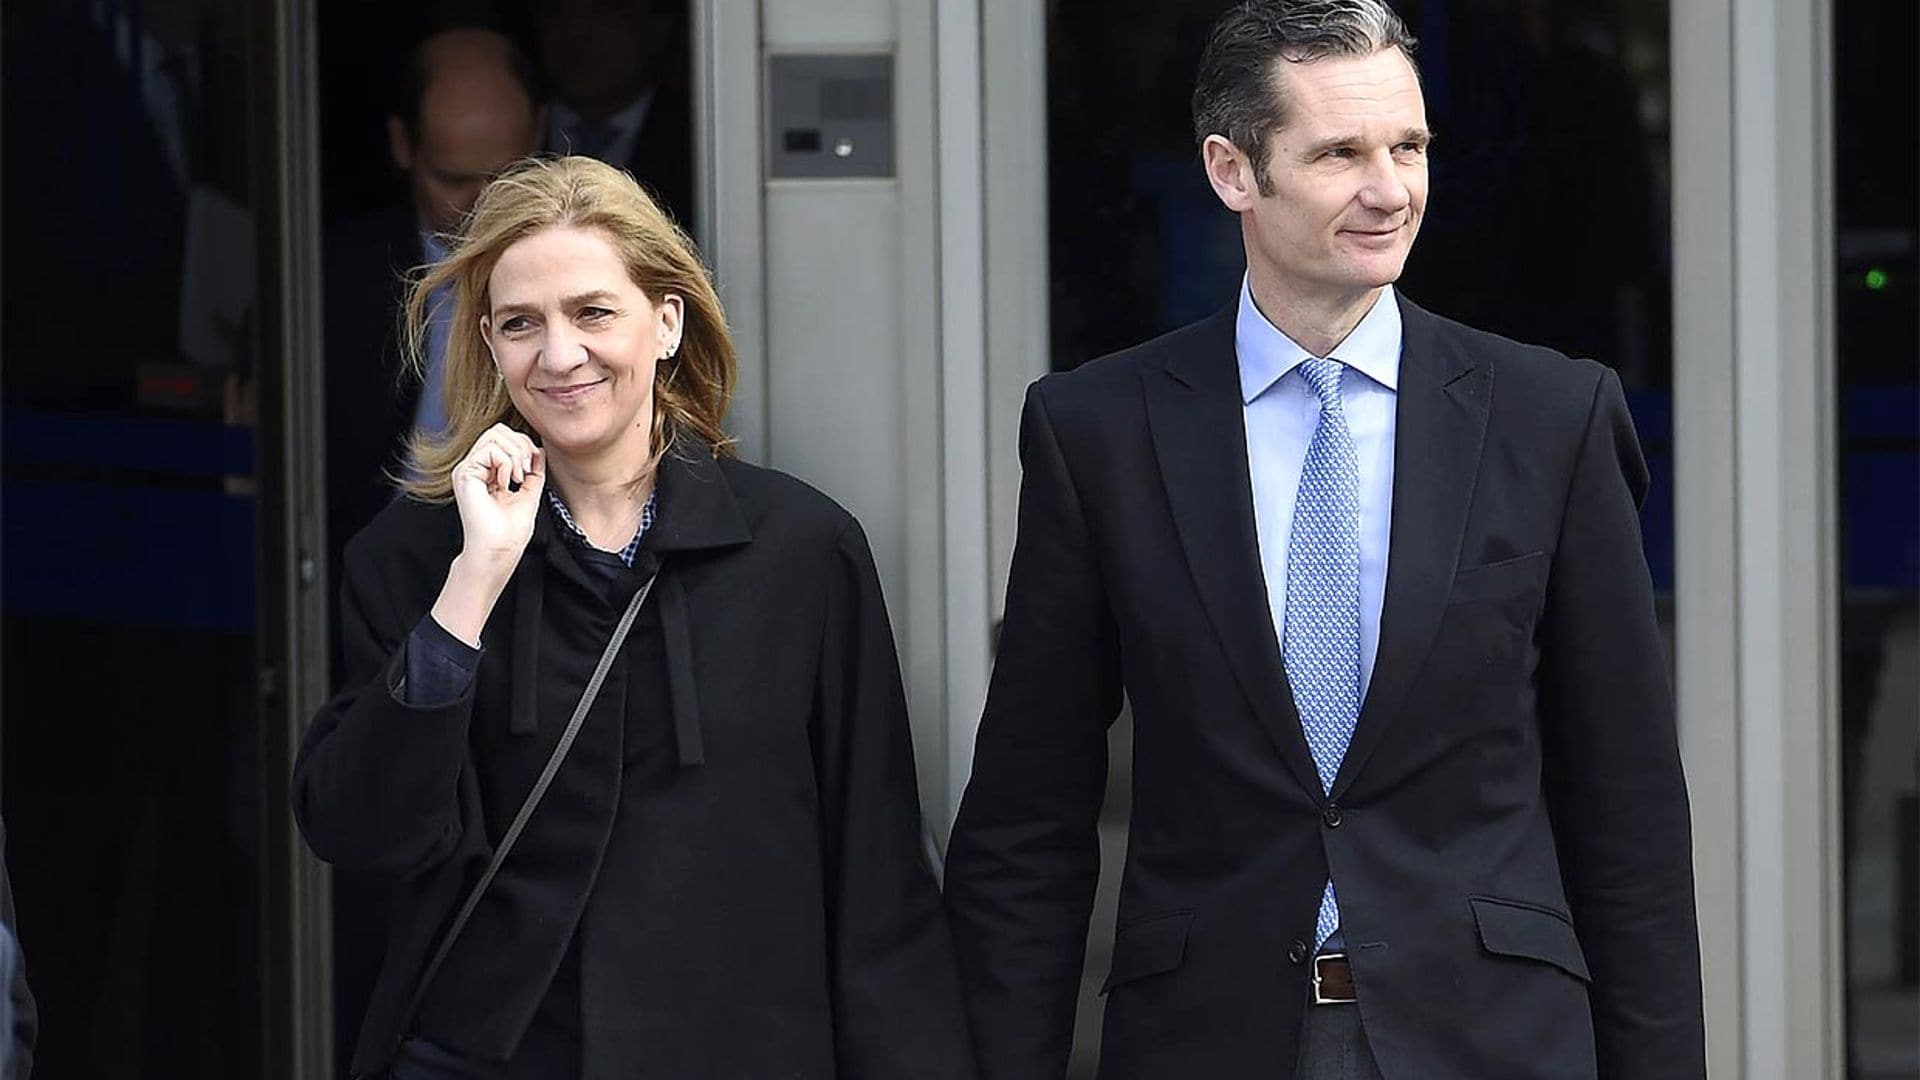 El Gobierno balear deberá devolver 201.000 euros a la Infanta Cristina y a Urdangarín